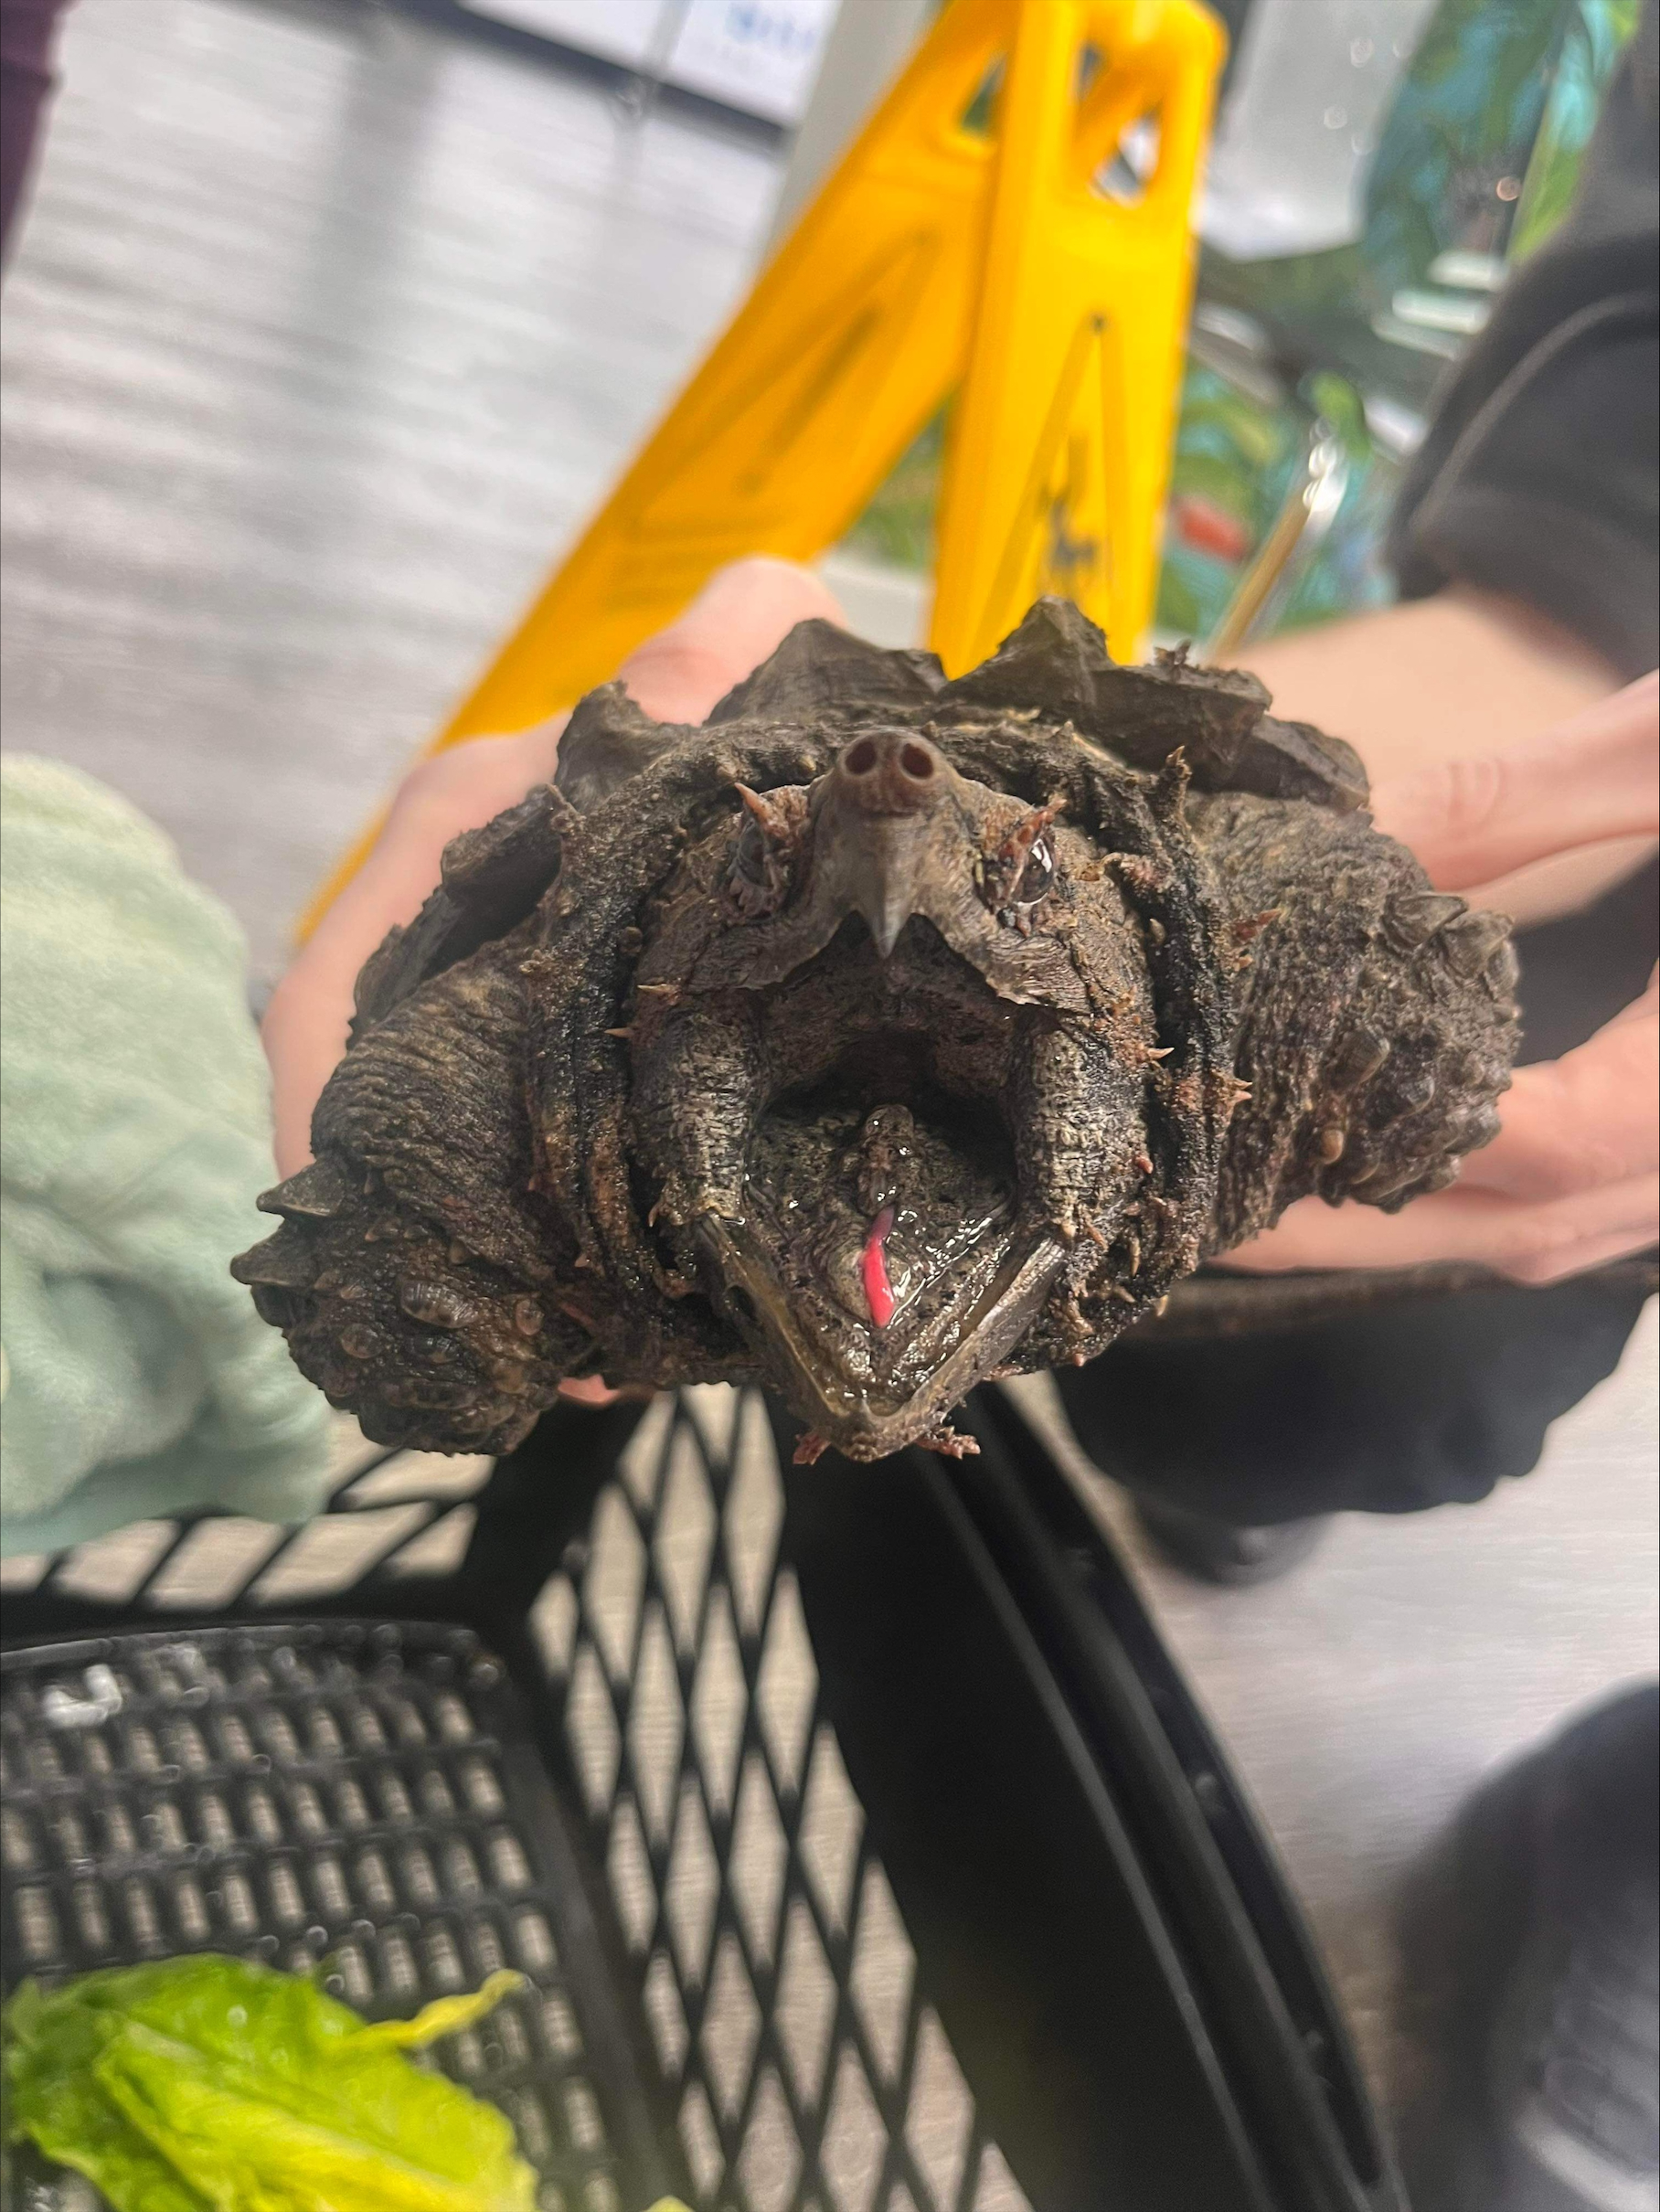 Una imagen de un cocodrilo mordiendo a una tortuga con la boca abierta.